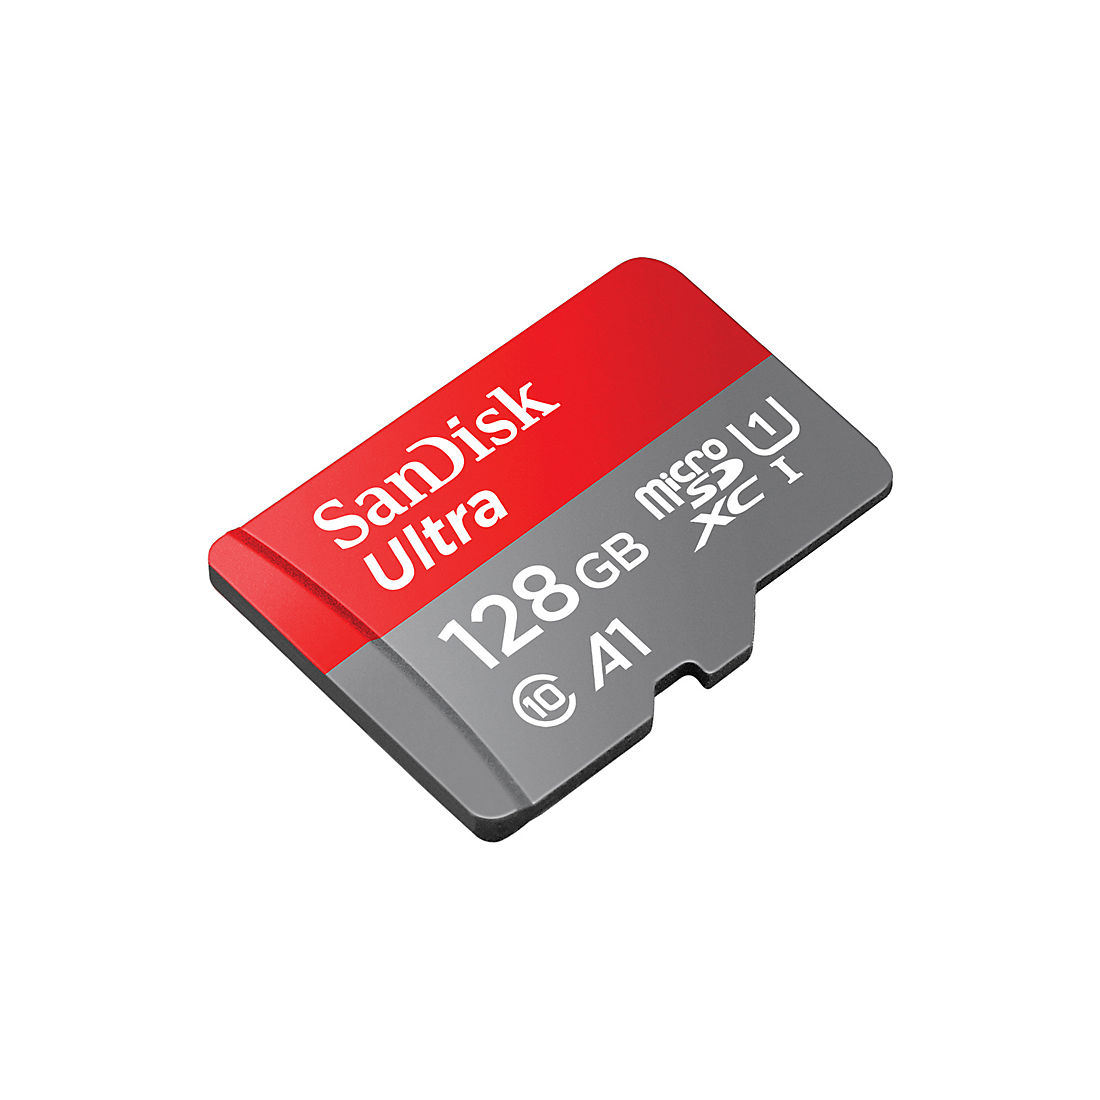 SanDisk 128GB Ultra microSDXC Card